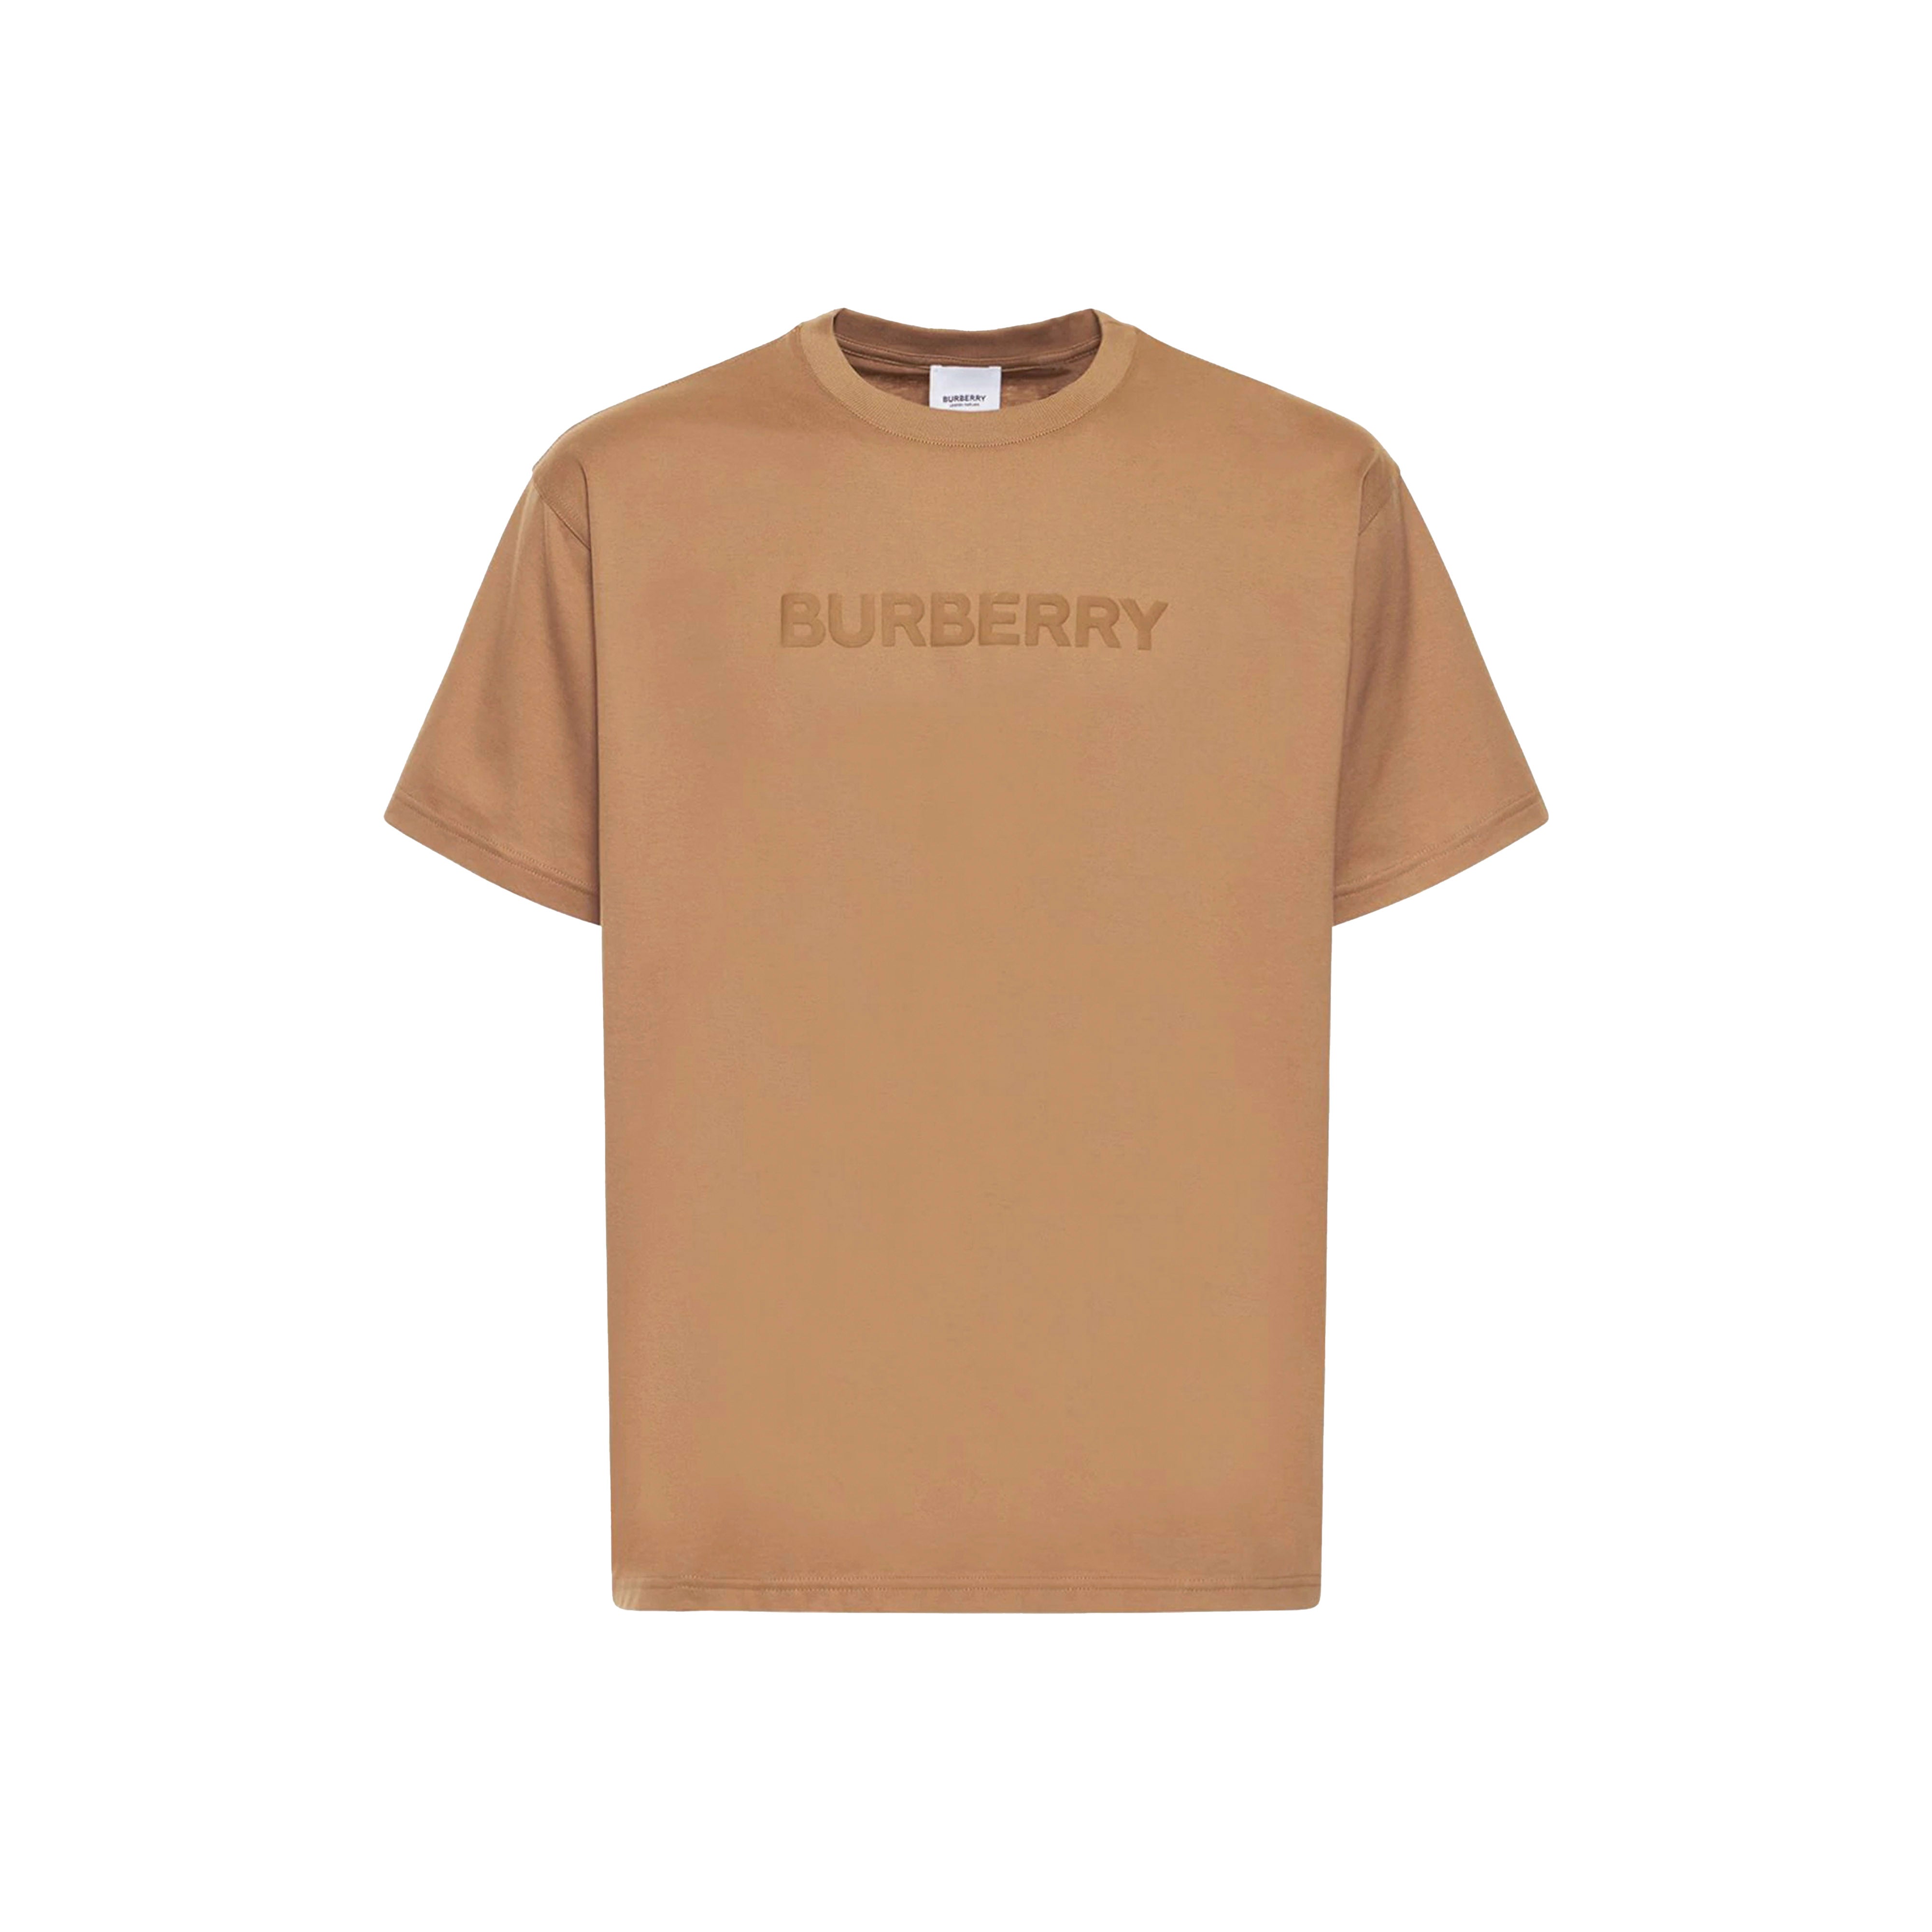 Burberry - Harriston logo tee brown